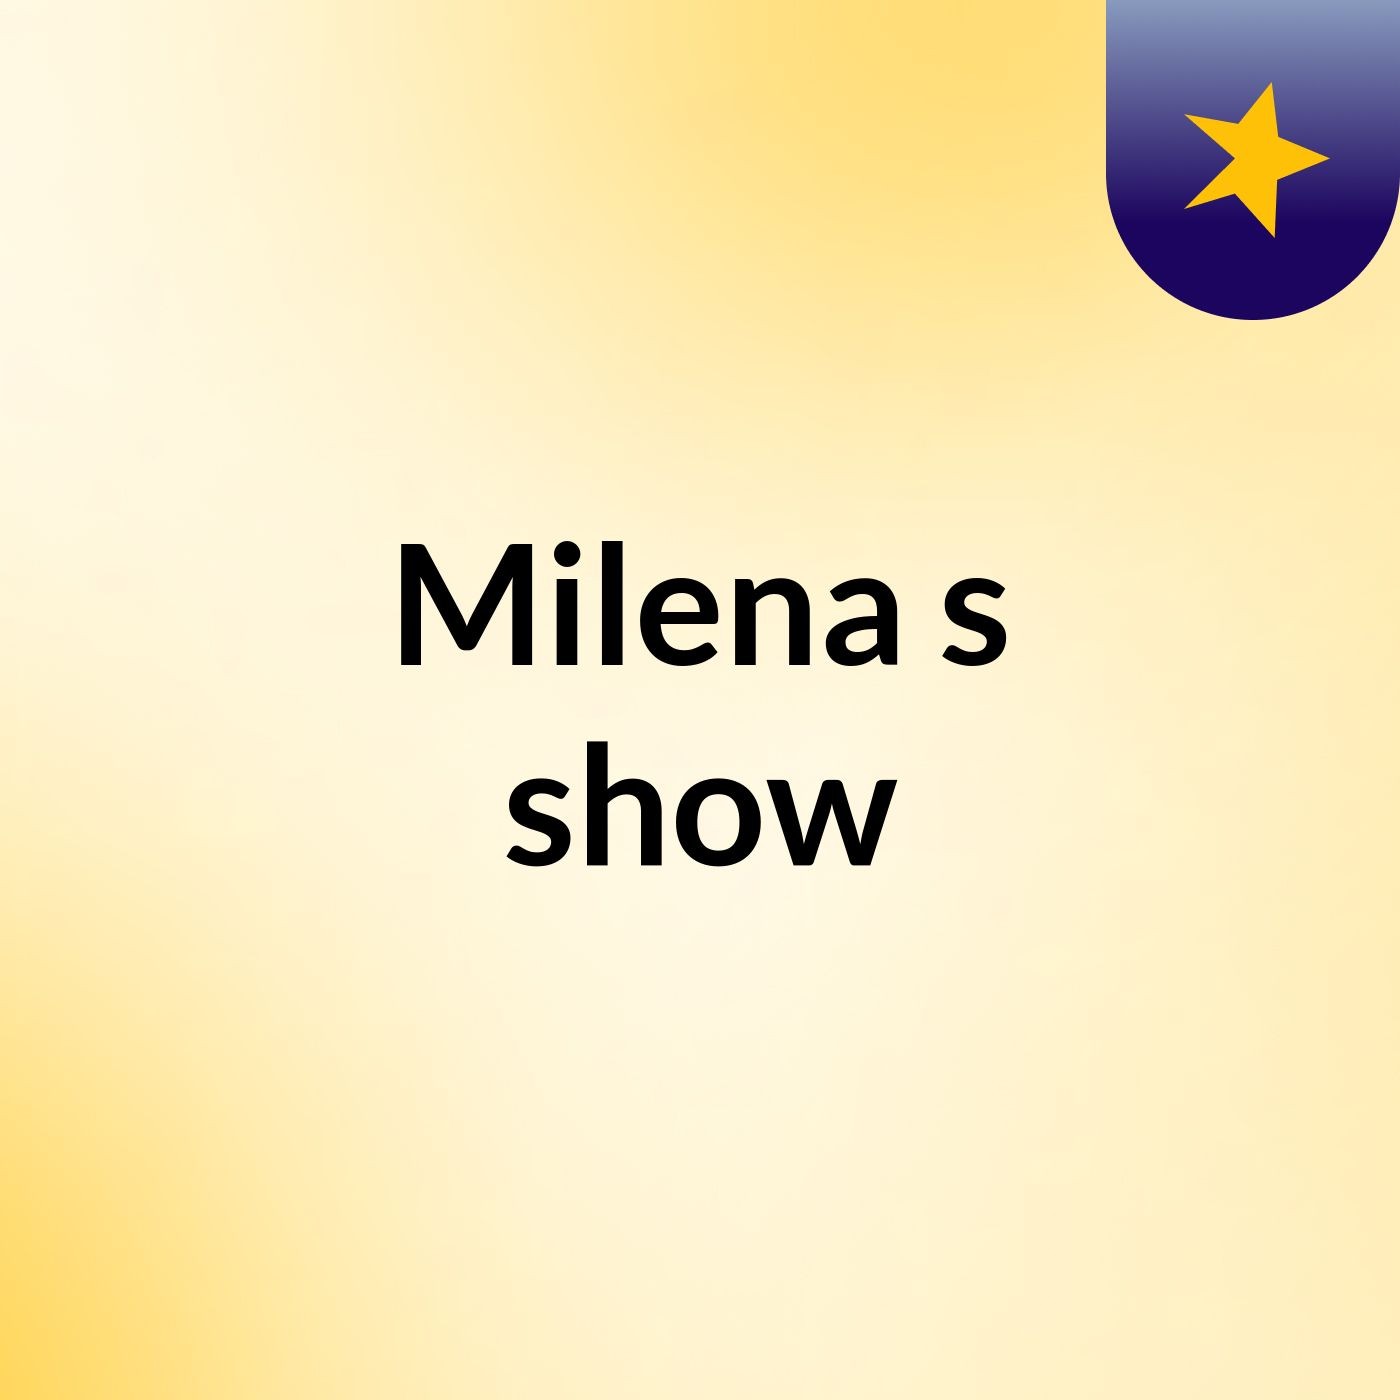 Milena's show